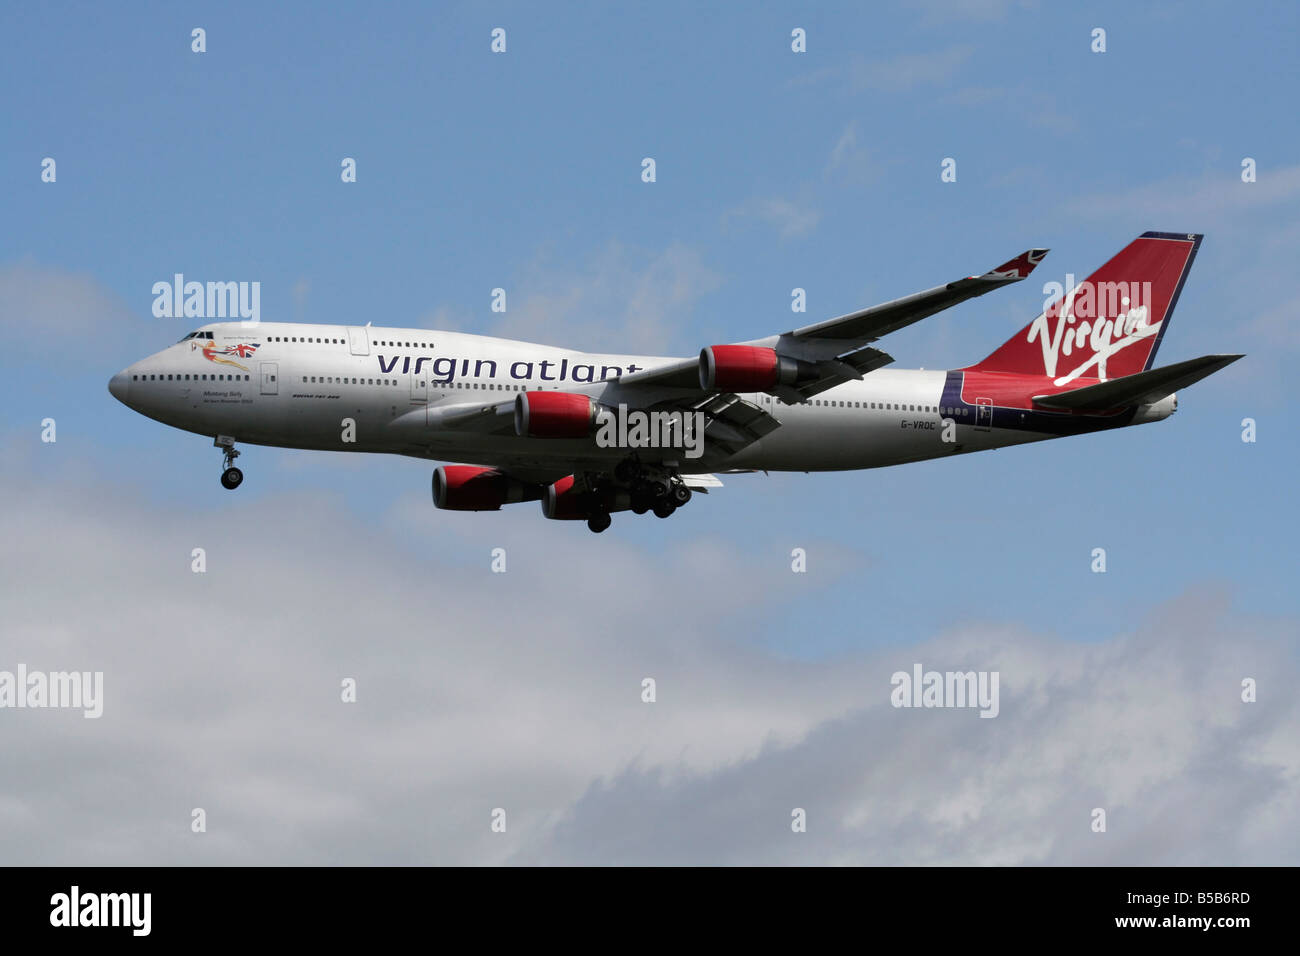 Virgin Atlantic Airways avion Boeing 747-400 connu sous le nom de jumbo jet battant en approche. Vue de côté. Banque D'Images